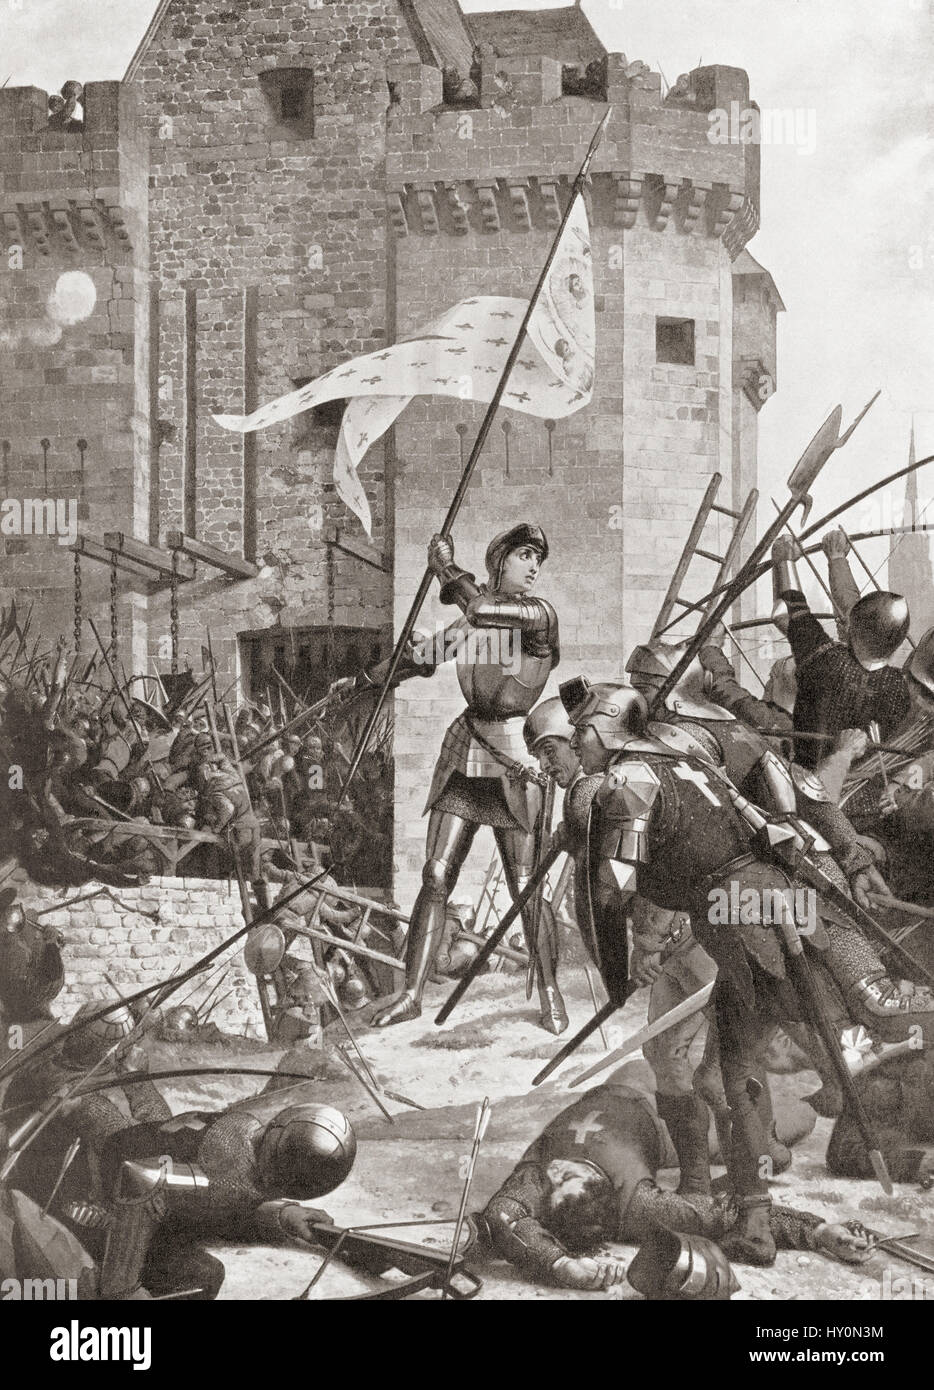 Jeanne d'Arc au siège d'Orléans, mai 1429. Jeanne d'Arc, 1412 - 1431, alias Jeanne d'Arc ou Jeanne la Pucelle. L'héroïne française et martyr. L'histoire de Hutchinson de l'ONU, publié en 1915. Banque D'Images